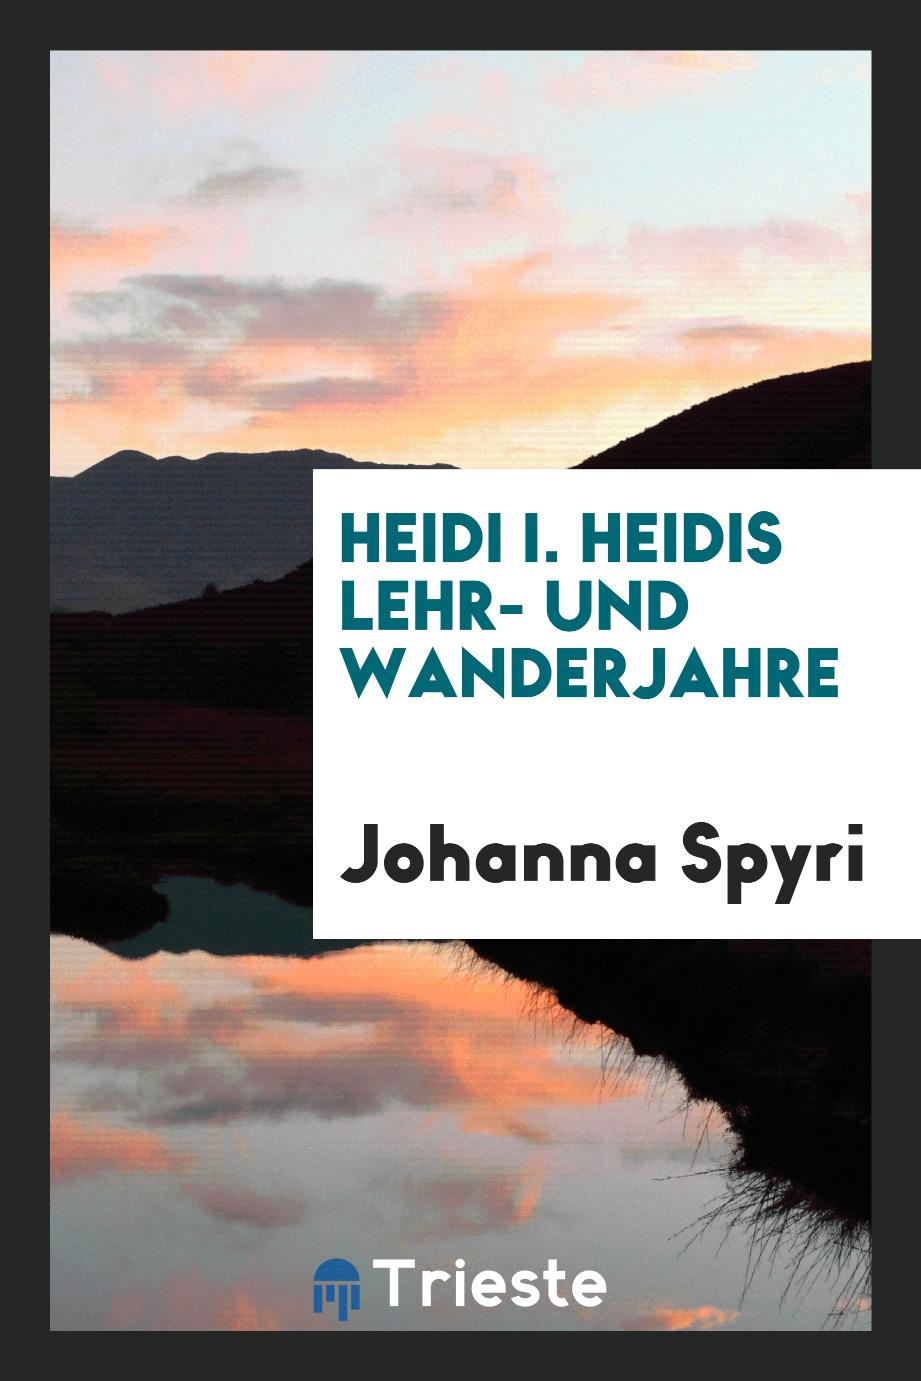 Heidi I. Heidis Lehr- und Wanderjahre